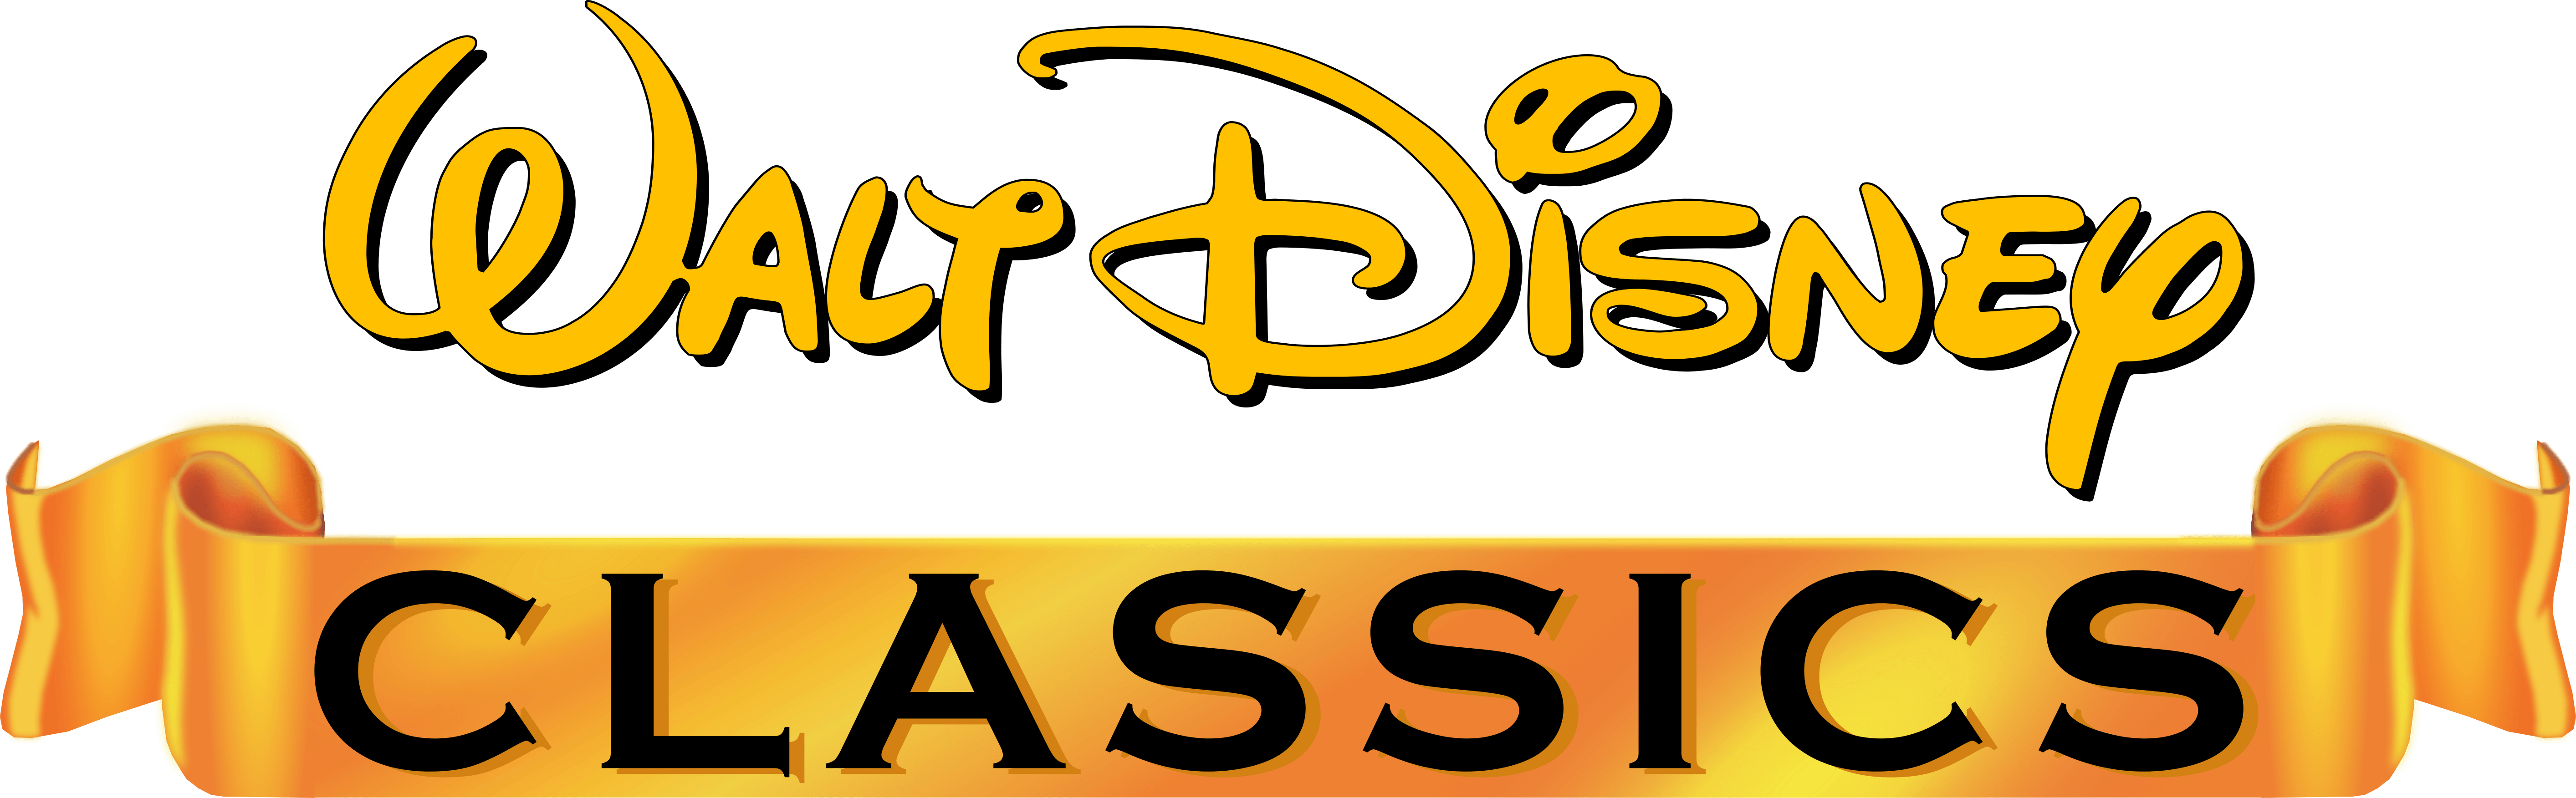 Walt Disney Gold Classic Collection Logo - All about Walt Disney Gold Classic Collection Disney Wiki Fandom